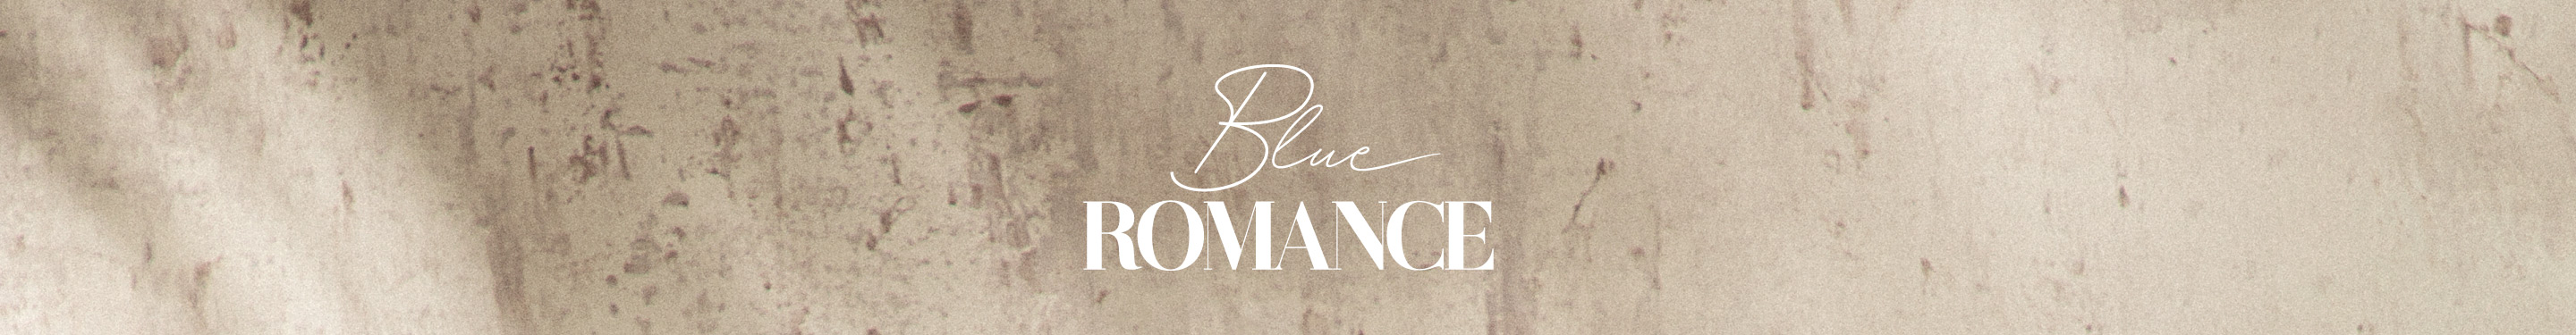 BLUE ROMANCE